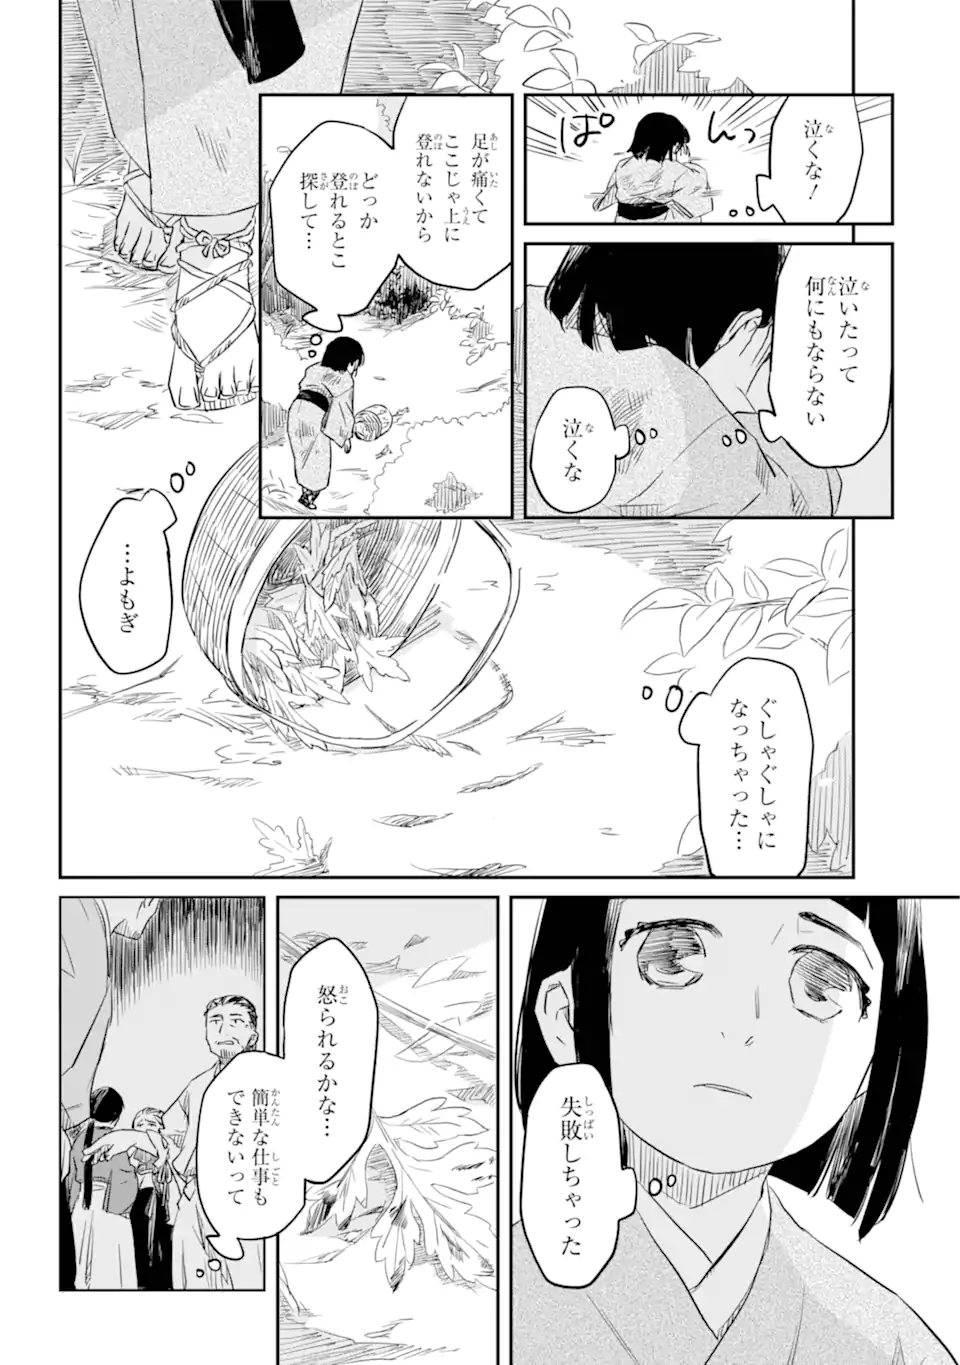 Ryuujin no Musume - Chapter 3.7 - Page 2